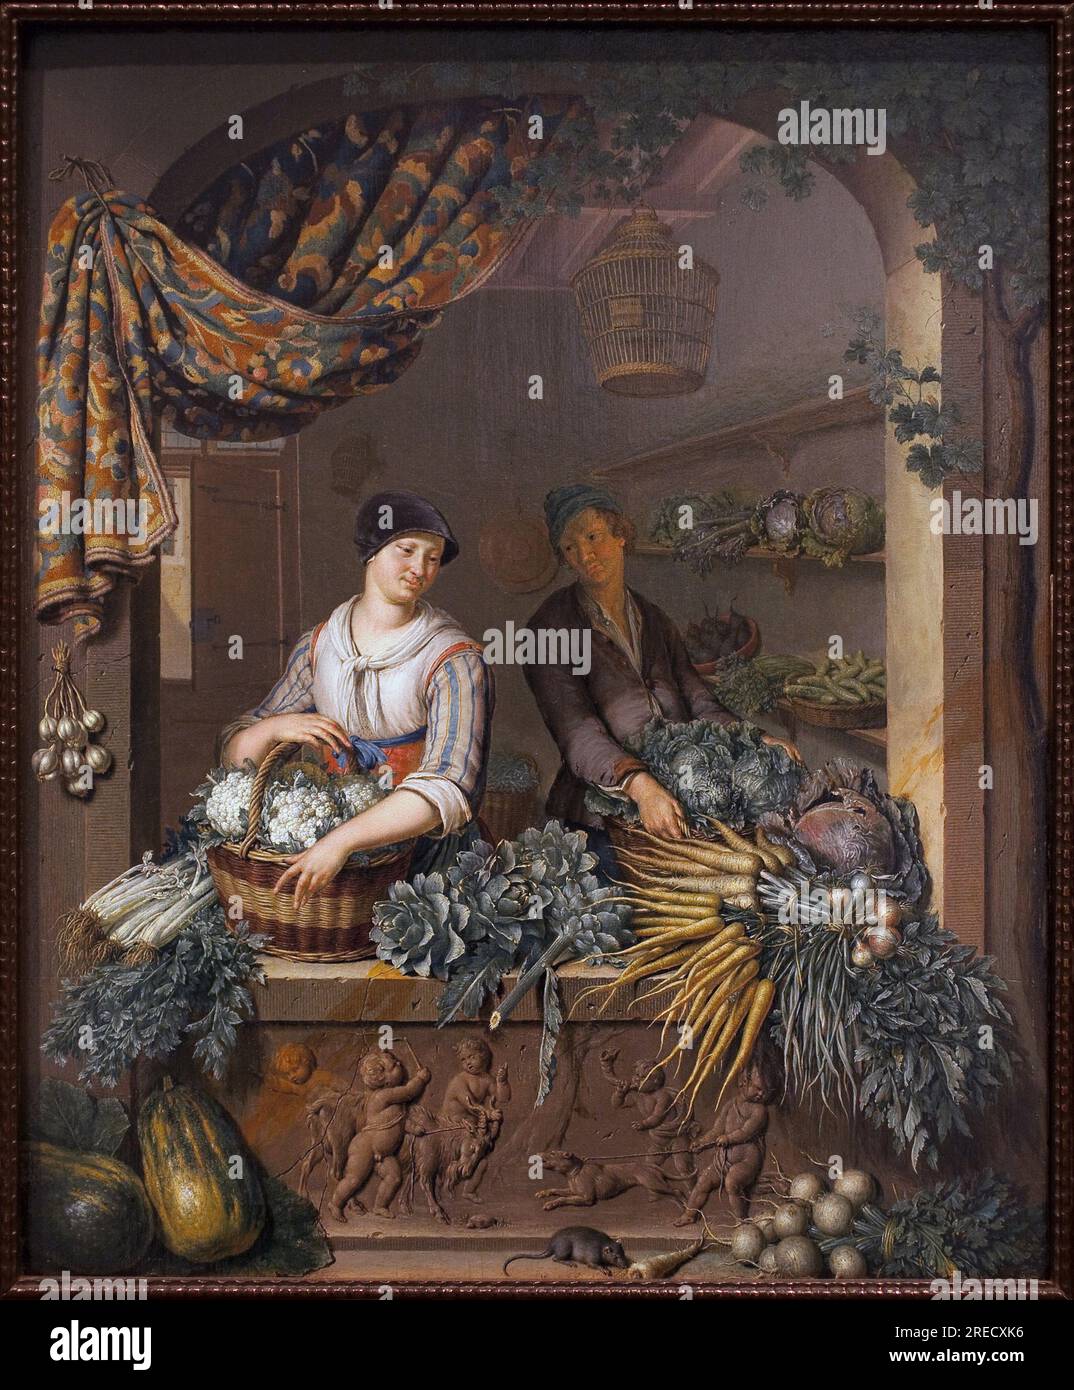 Vendeur de legumes. Peinture de Willem van Mieris (1662-1747), huile sur bois, 1730. Art hollandais, 18e siecle. Musee des Beaux Arts de Niort. Stock Photo